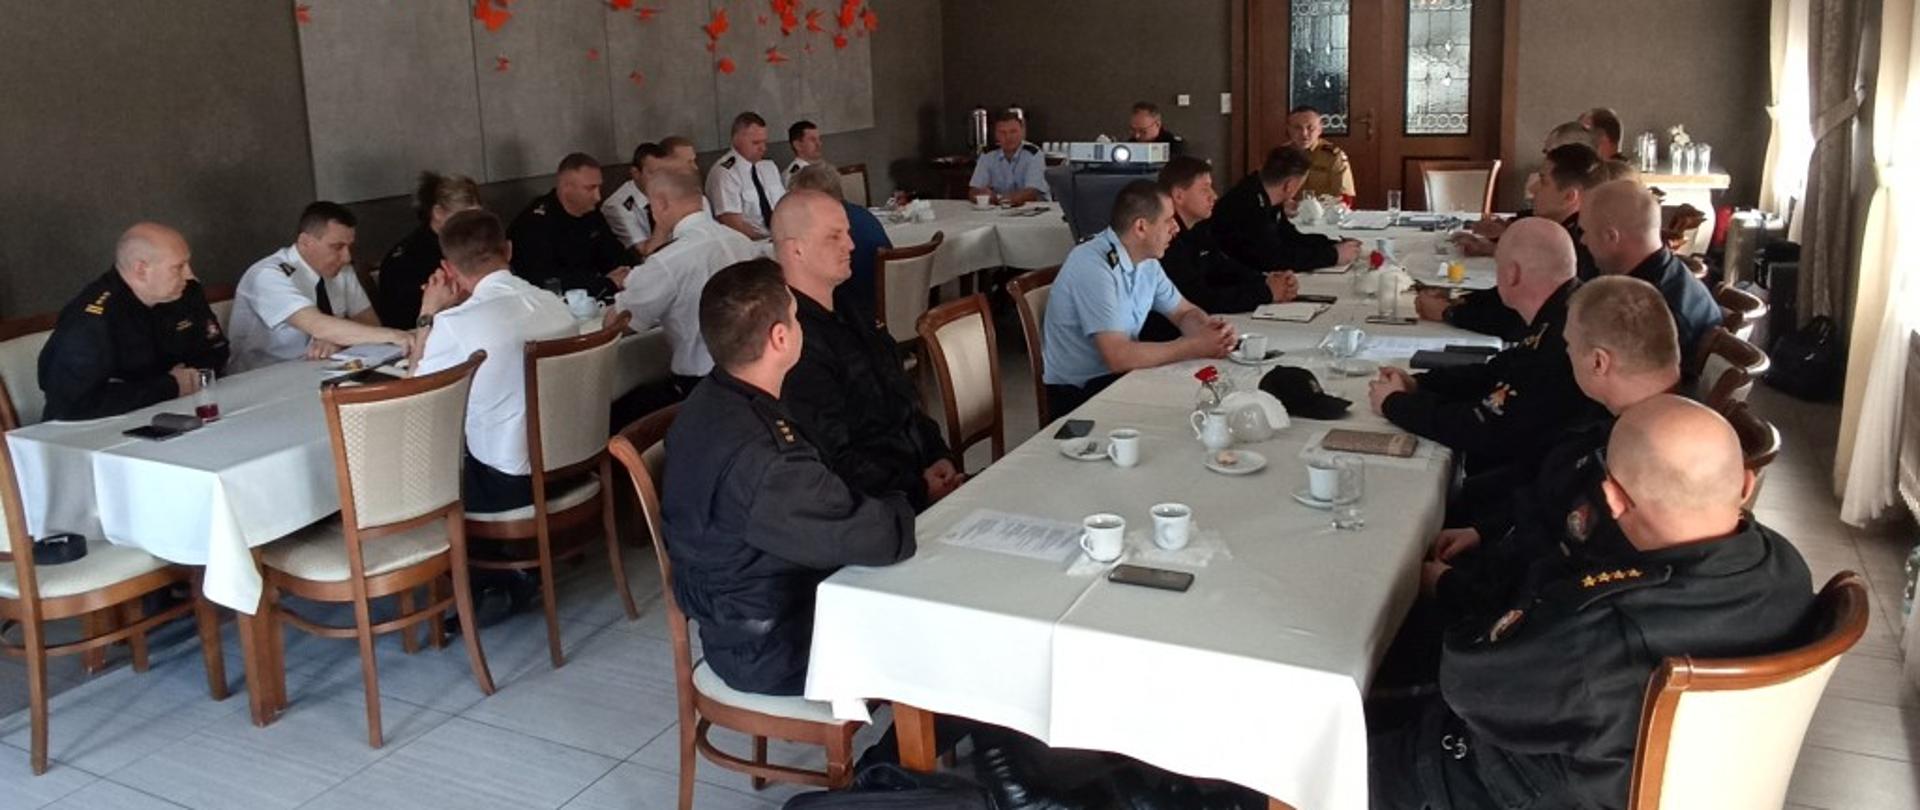 Funkcjonariusze PSP województwa opolskiego na sali siedzą przy stole podczas narad szkoleniowej pionu kontrolno - rozpoznawczego PSP województwa opolskiego, która odbyła się 31.05-01.06.2022 roku. Strażacy w mundurach sztabowych i wyjściowych.